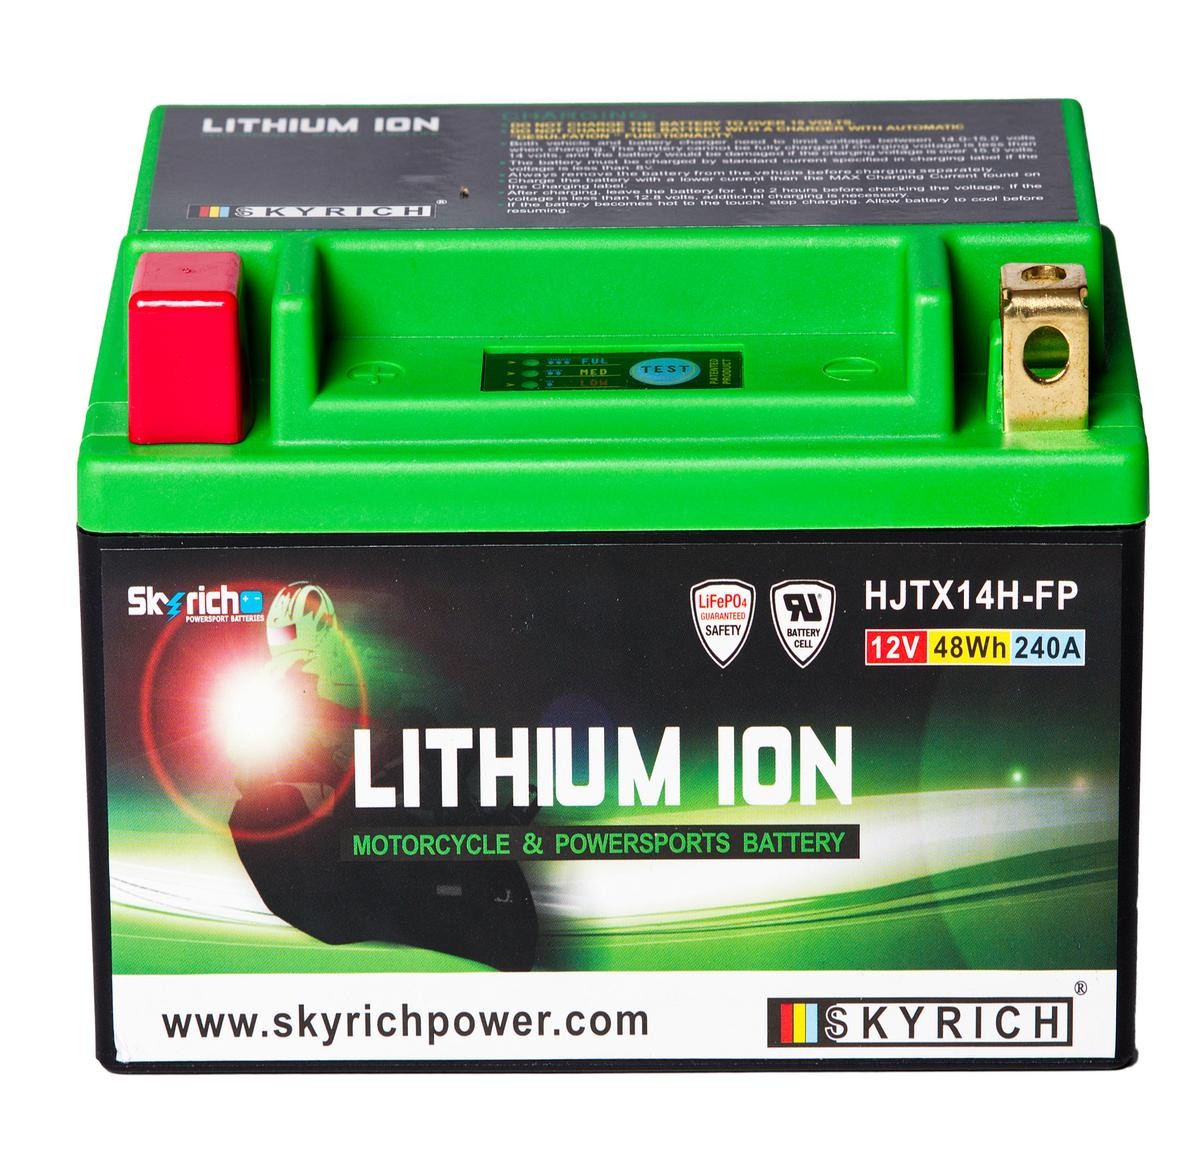 SKYRICH LITHIUM ION HJTX14H-FP HONDA Scuter Baterie de pornire 12V 4Ah 240A N Baterie-Li-Ion